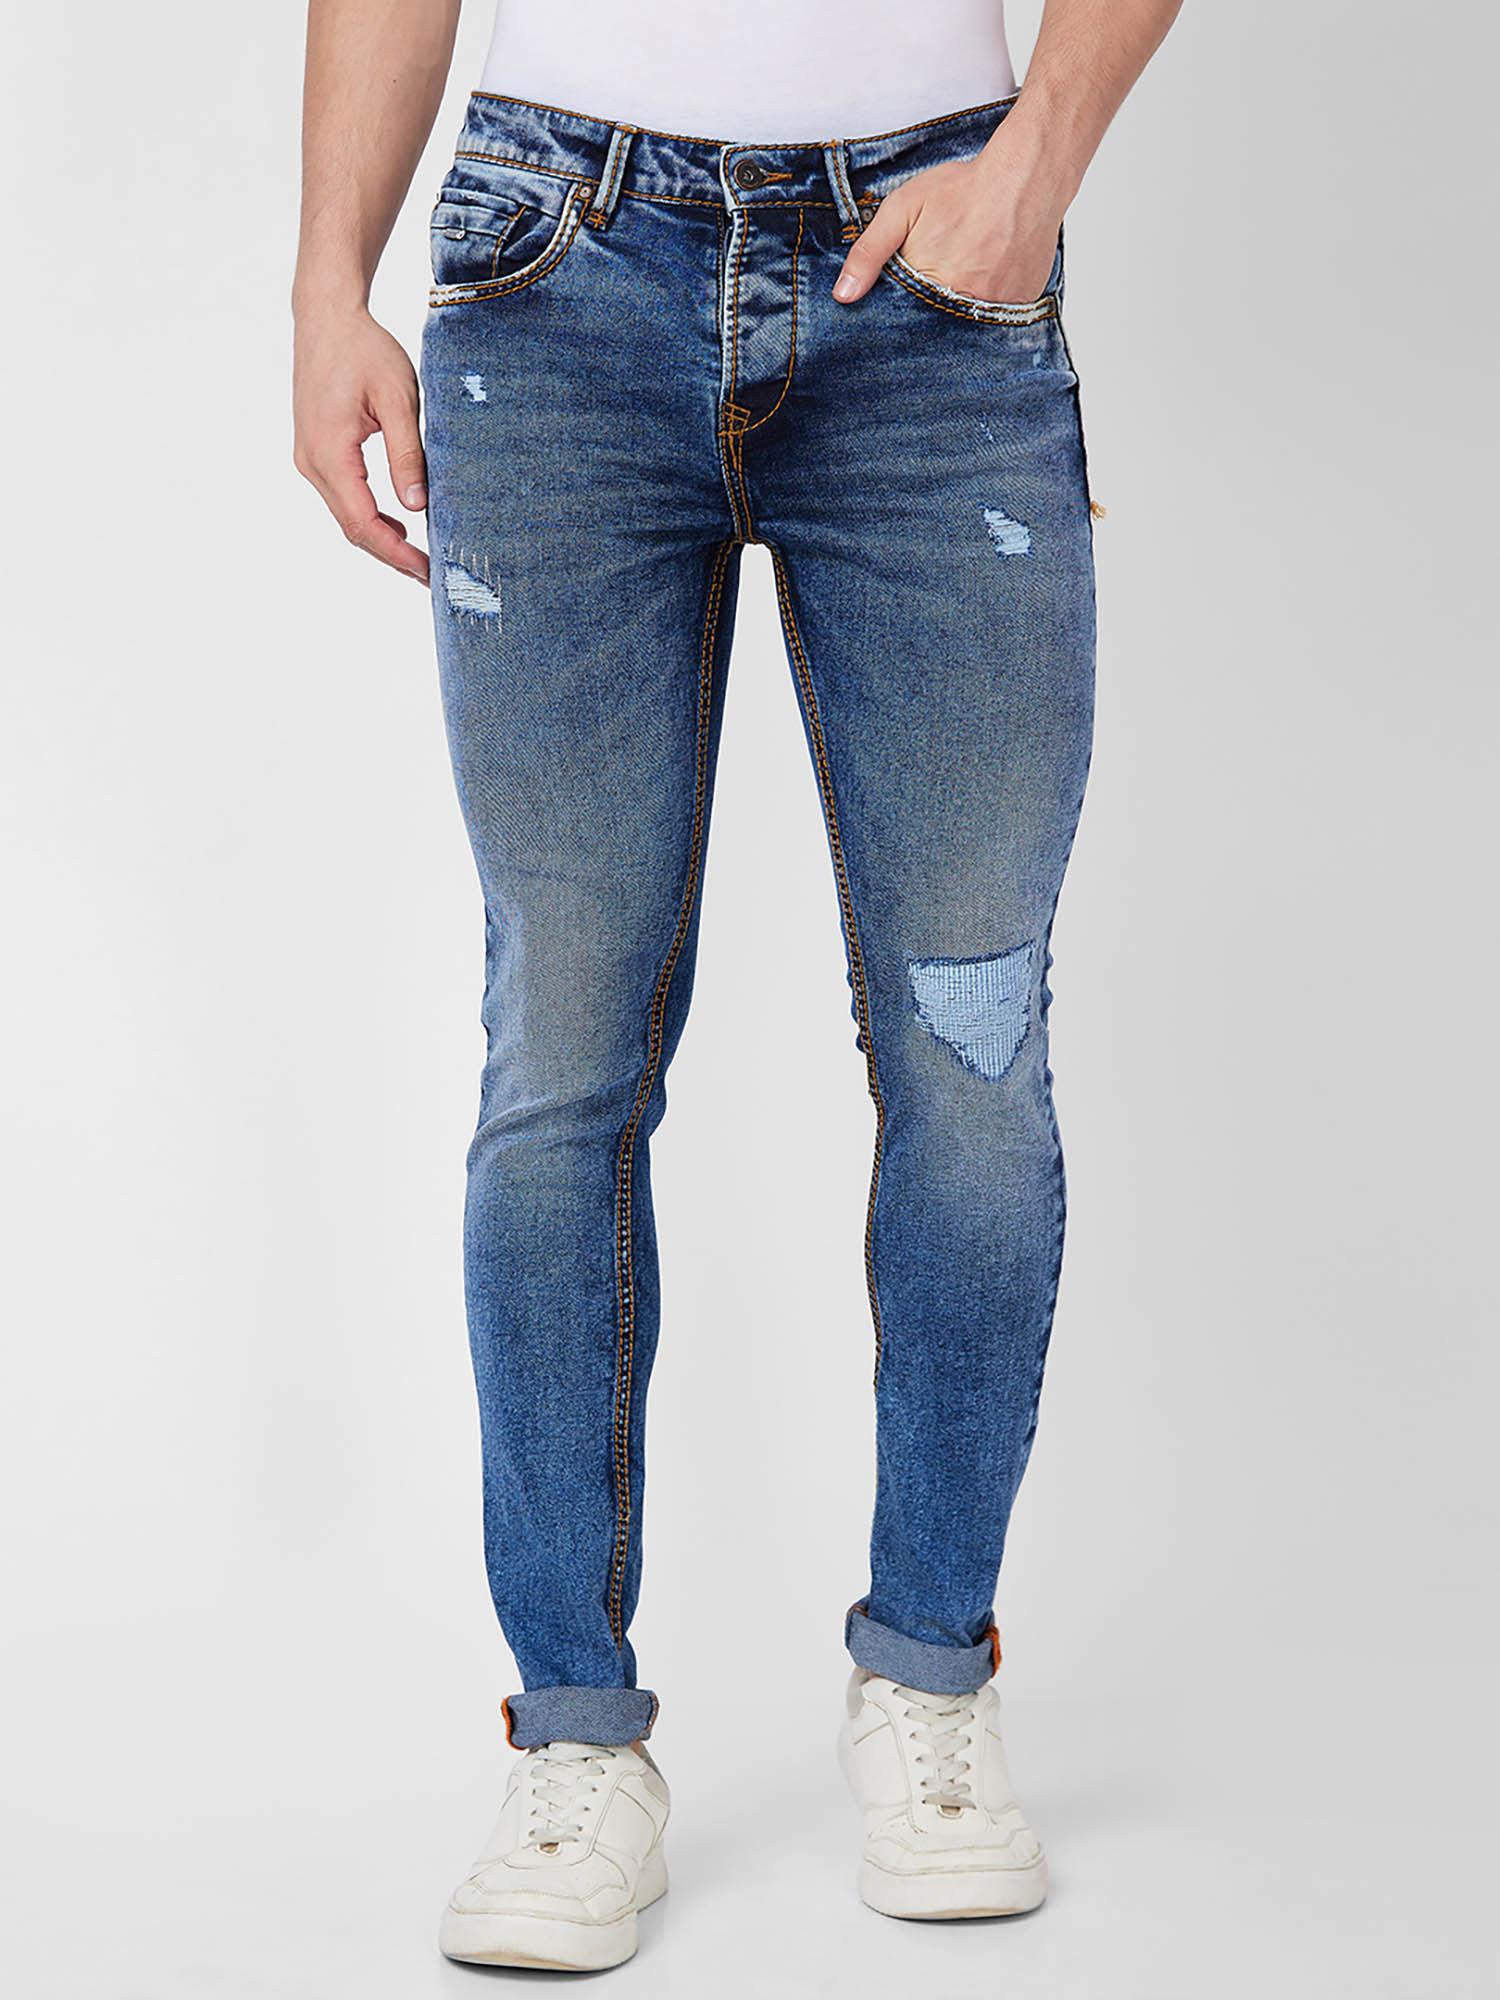 low-rise-slim-fit-blue-jeans-for-men